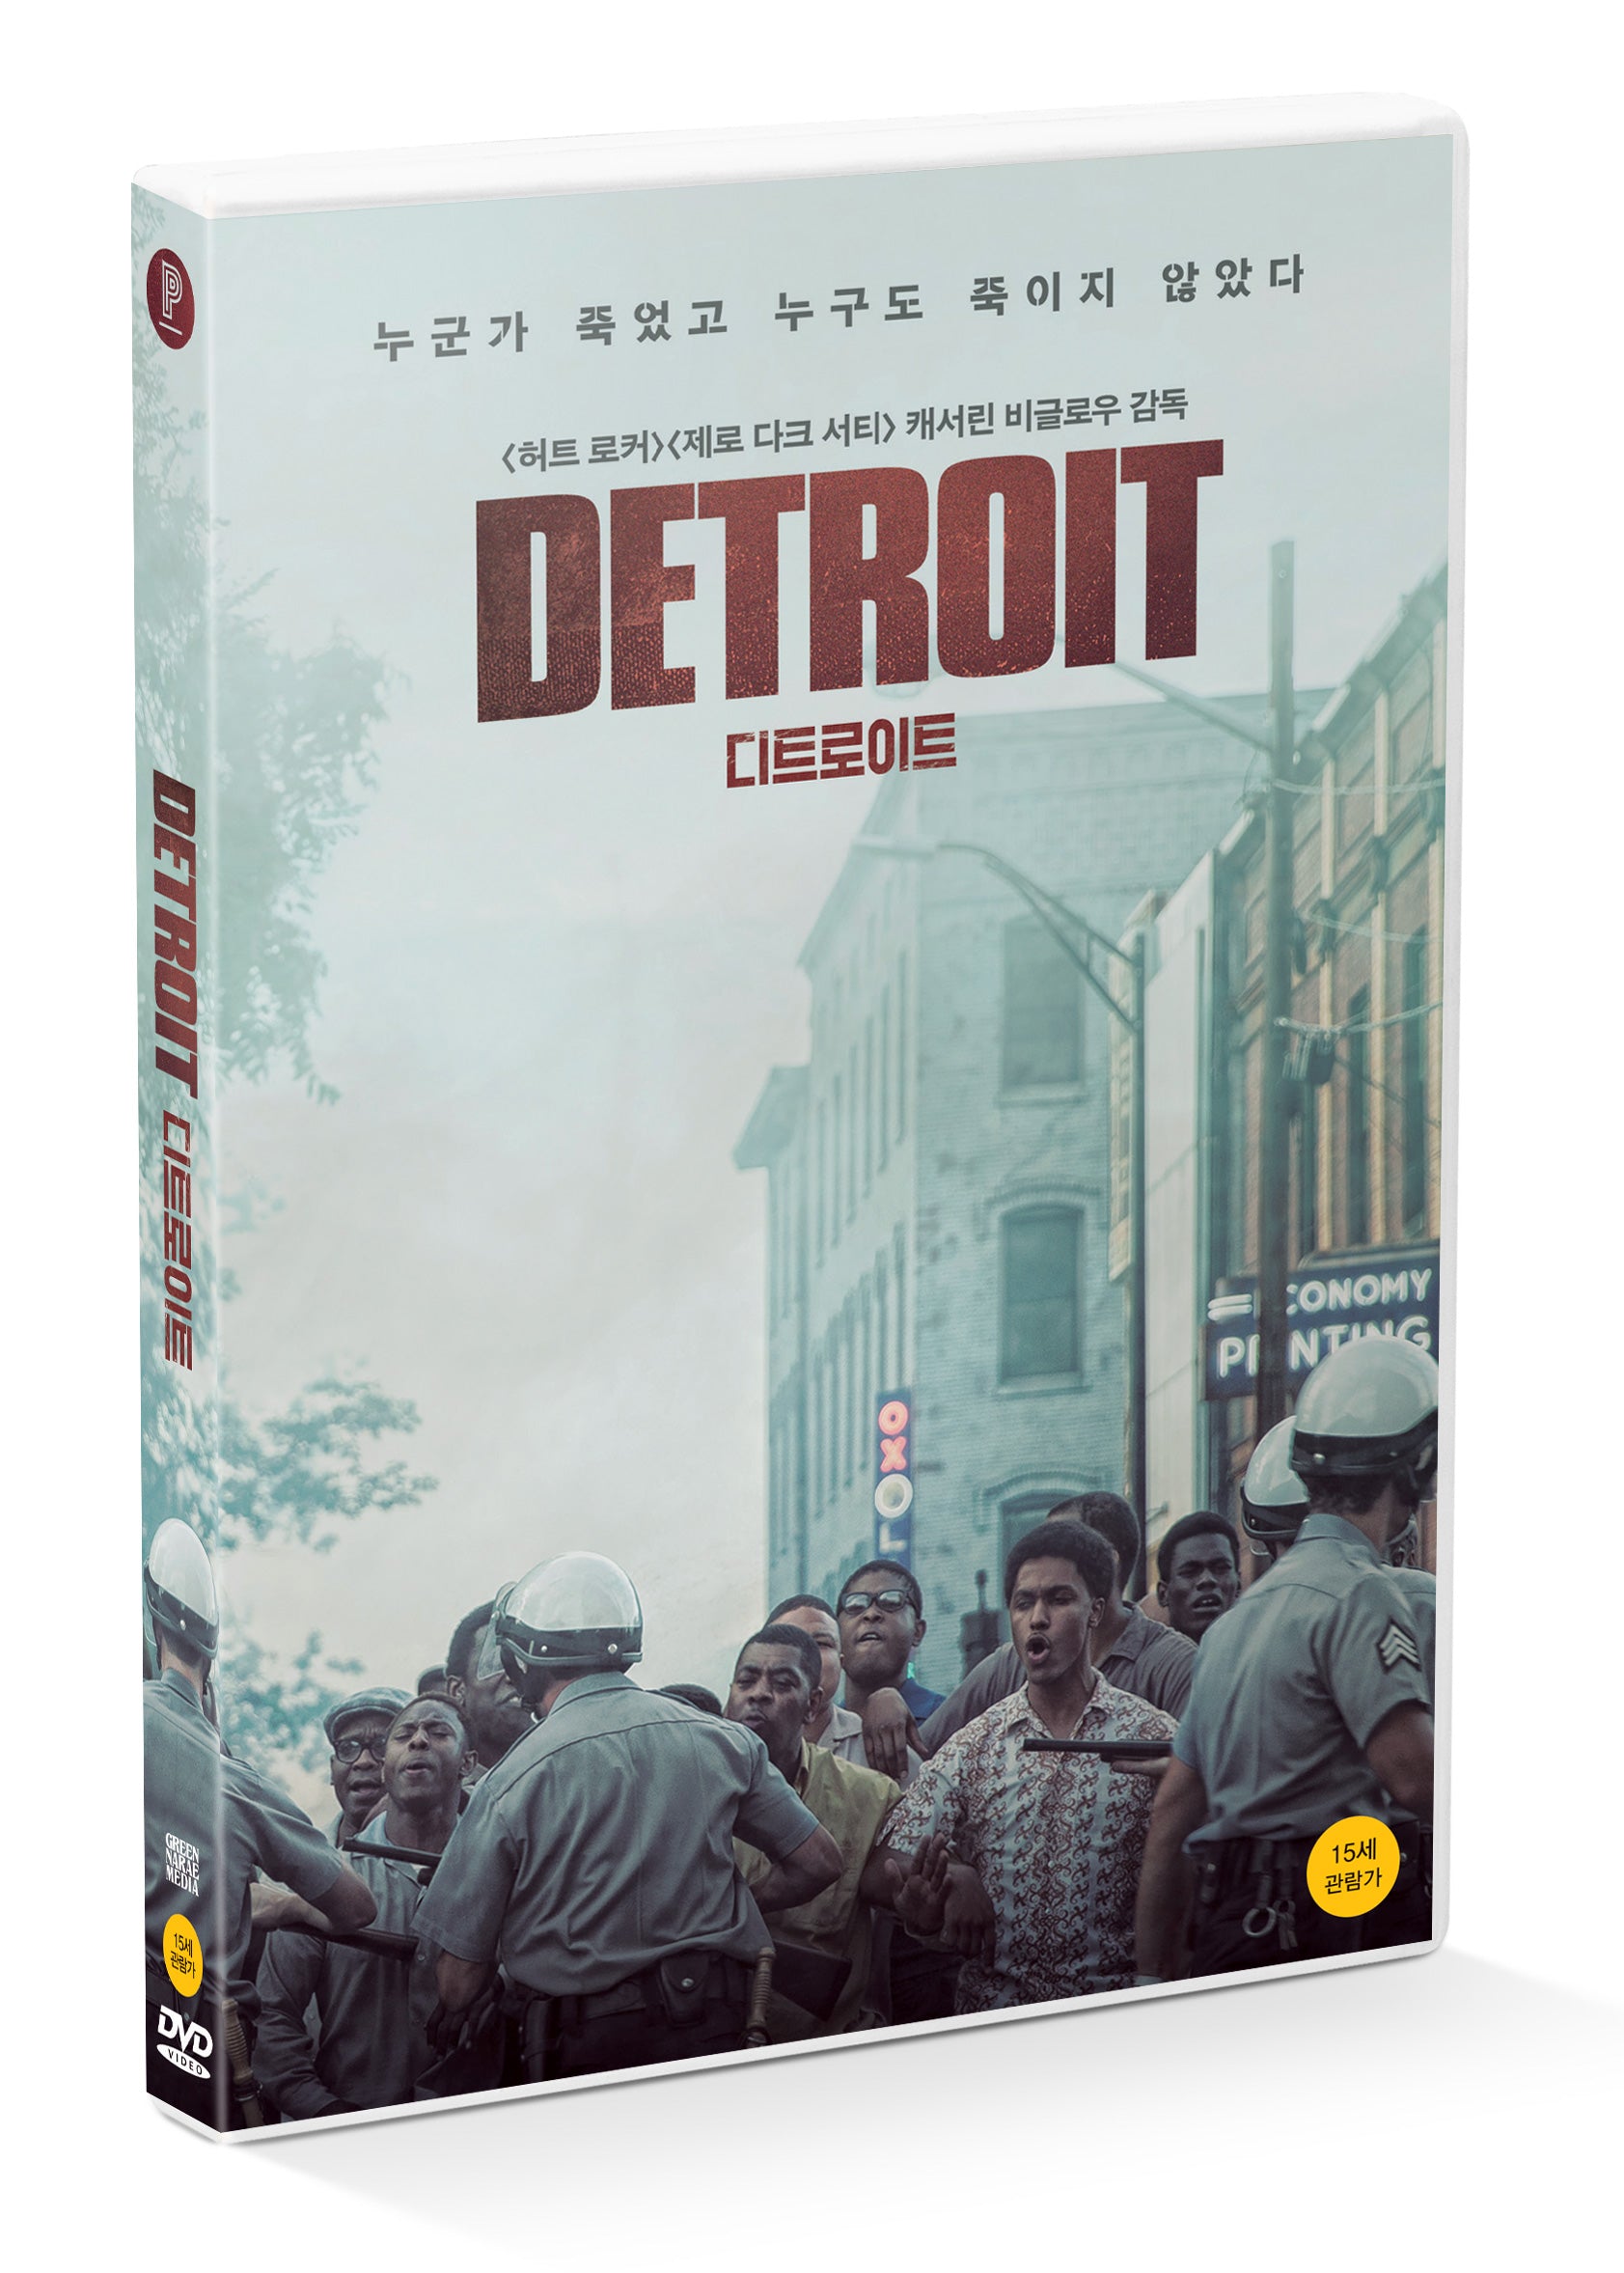 DETROIT DVD